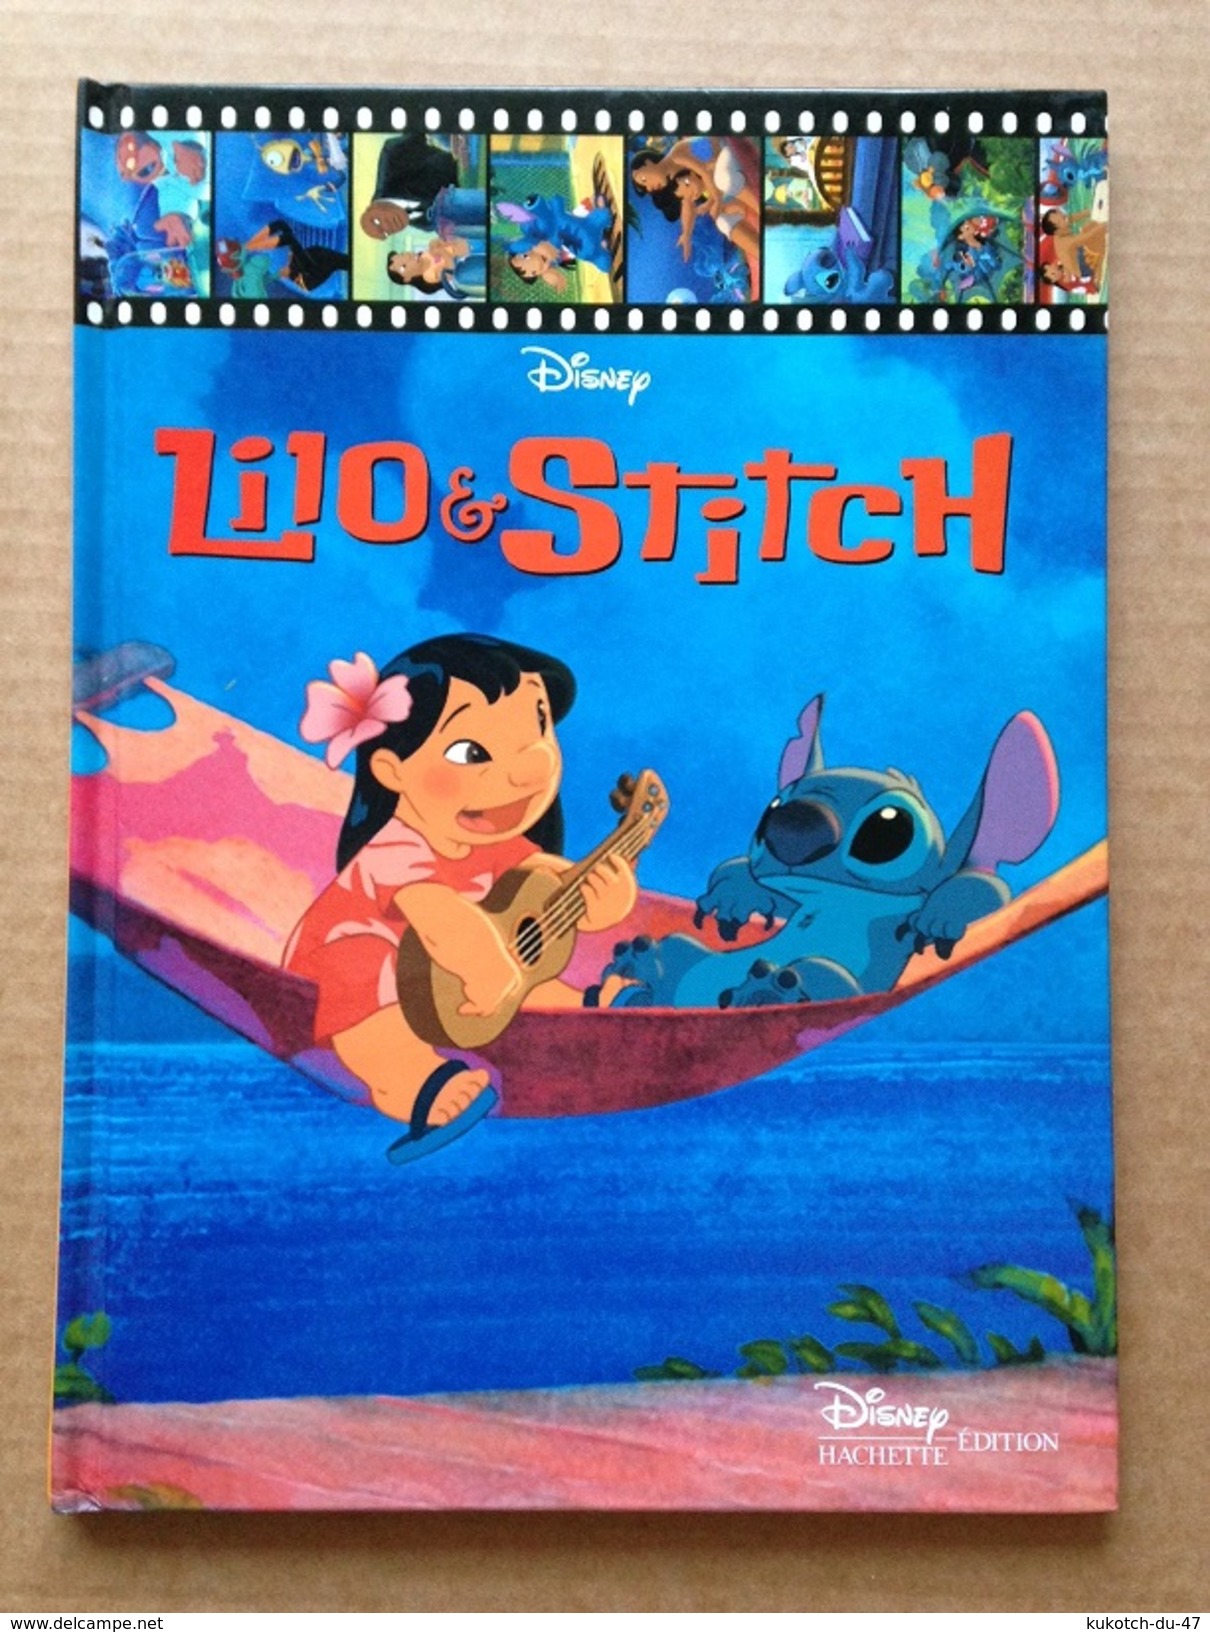 Disney - Albums Hachette (Lot de 13 albums) - Années 2000